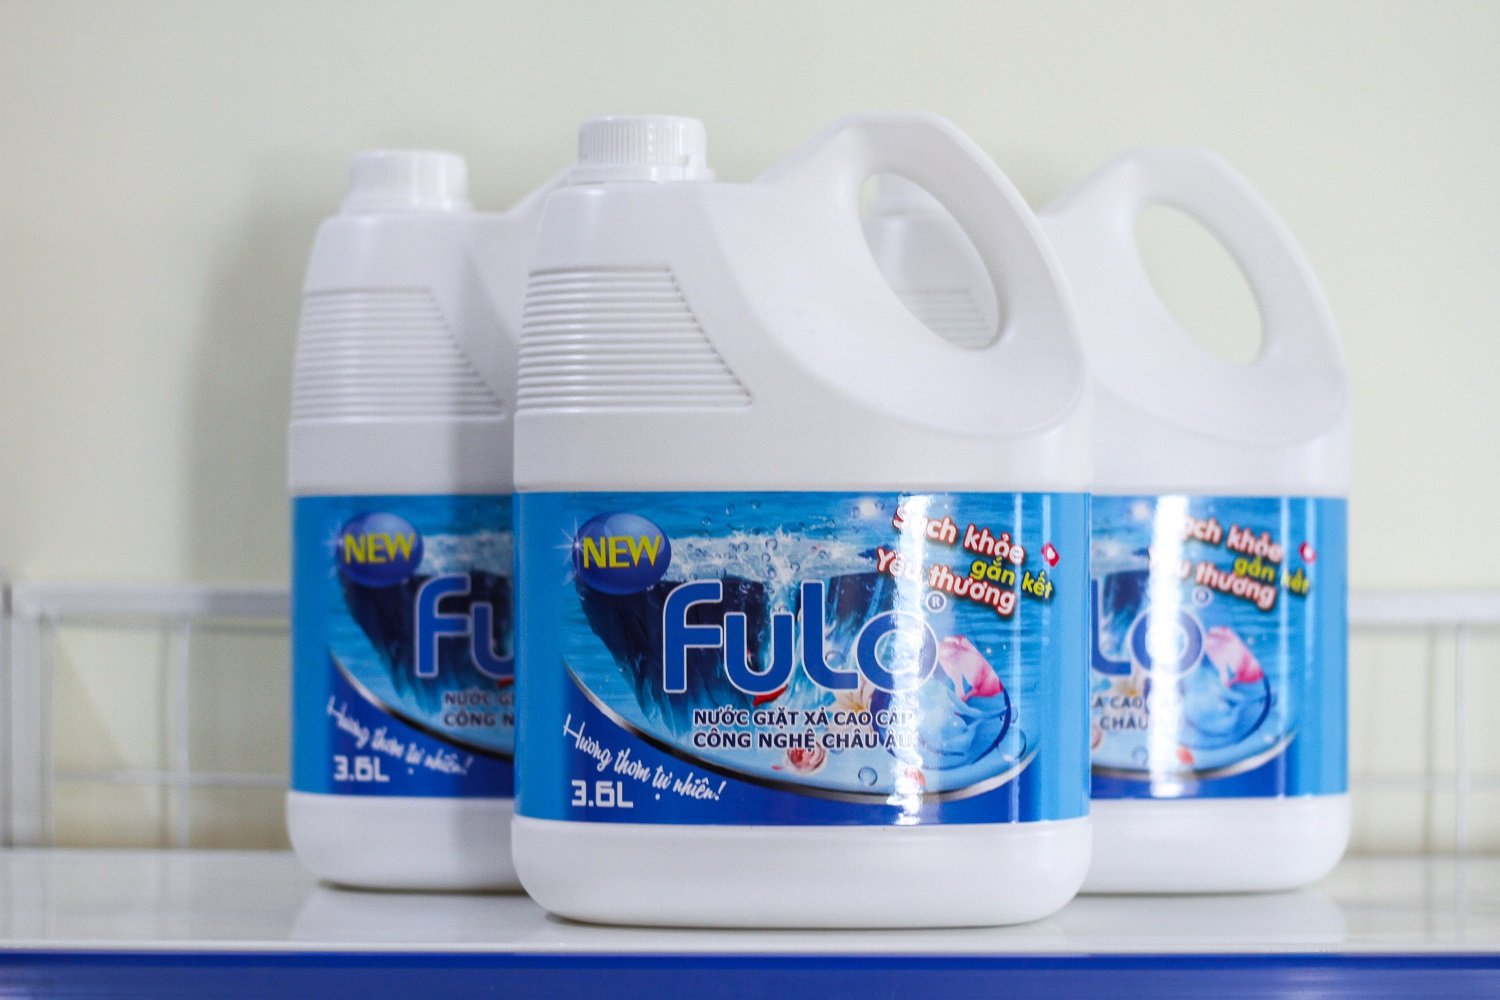 Nước giặt xả cao cấp Fulo hương thơm tự nhiên công nghệ Châu Âu - can tiết kiệm 3.6 lít